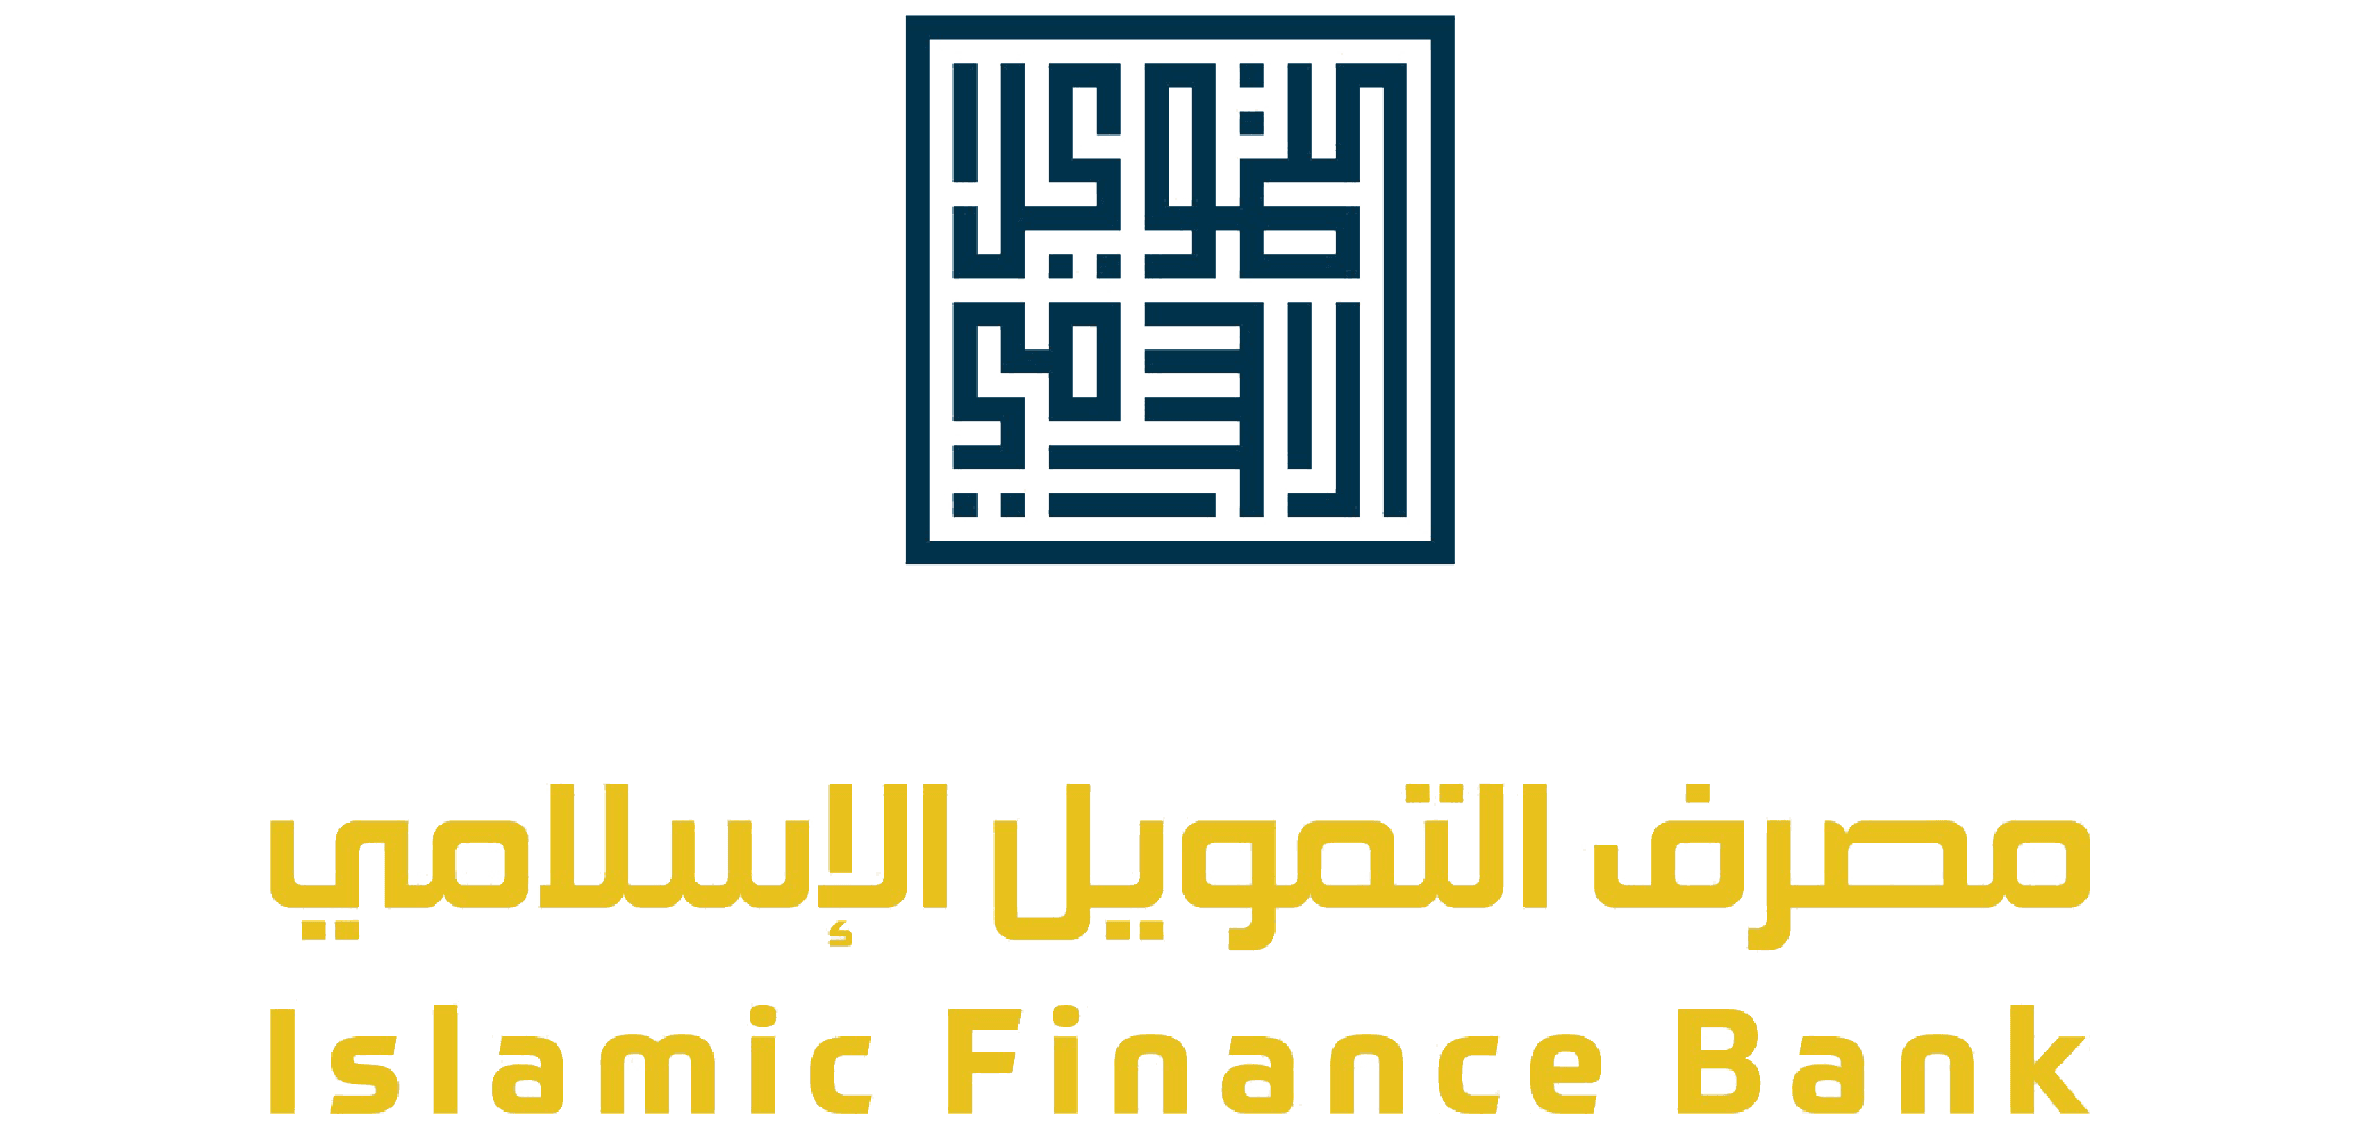 Islamic Finance Bank